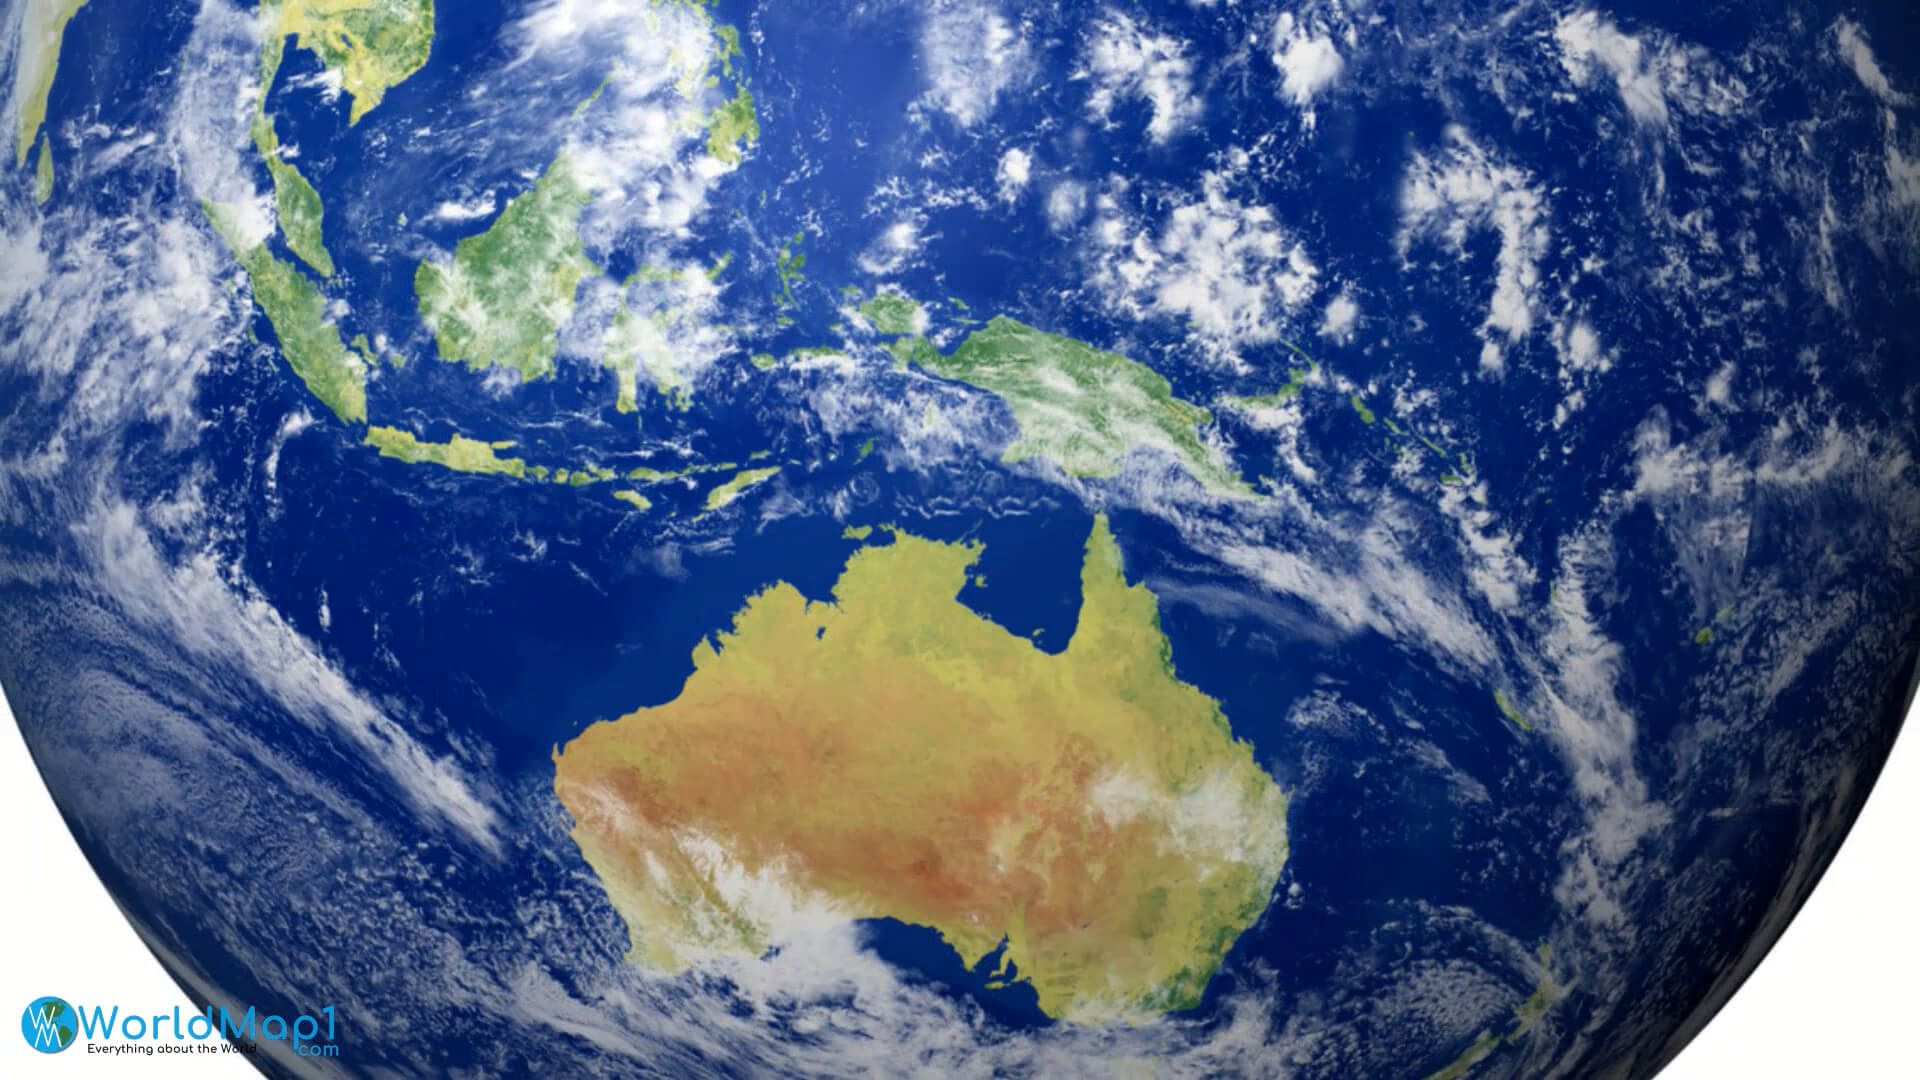 Australia Globe Map